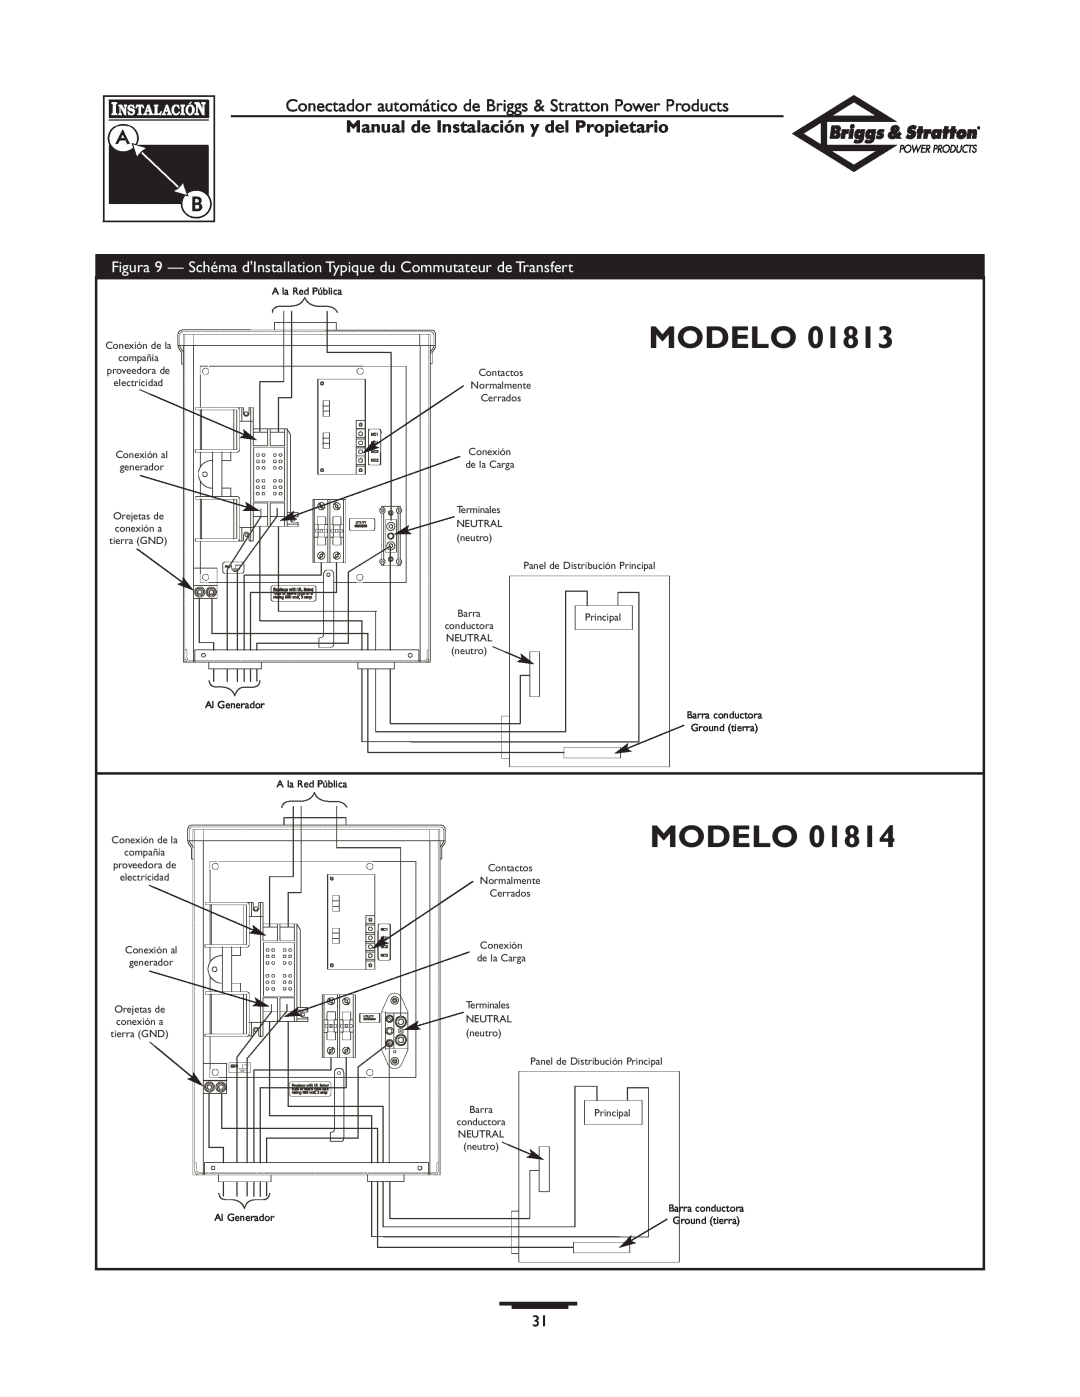 Briggs & Stratton 01813-0, 01814-0 owner manual Modelo, Manual de Instalación y del Propietario 